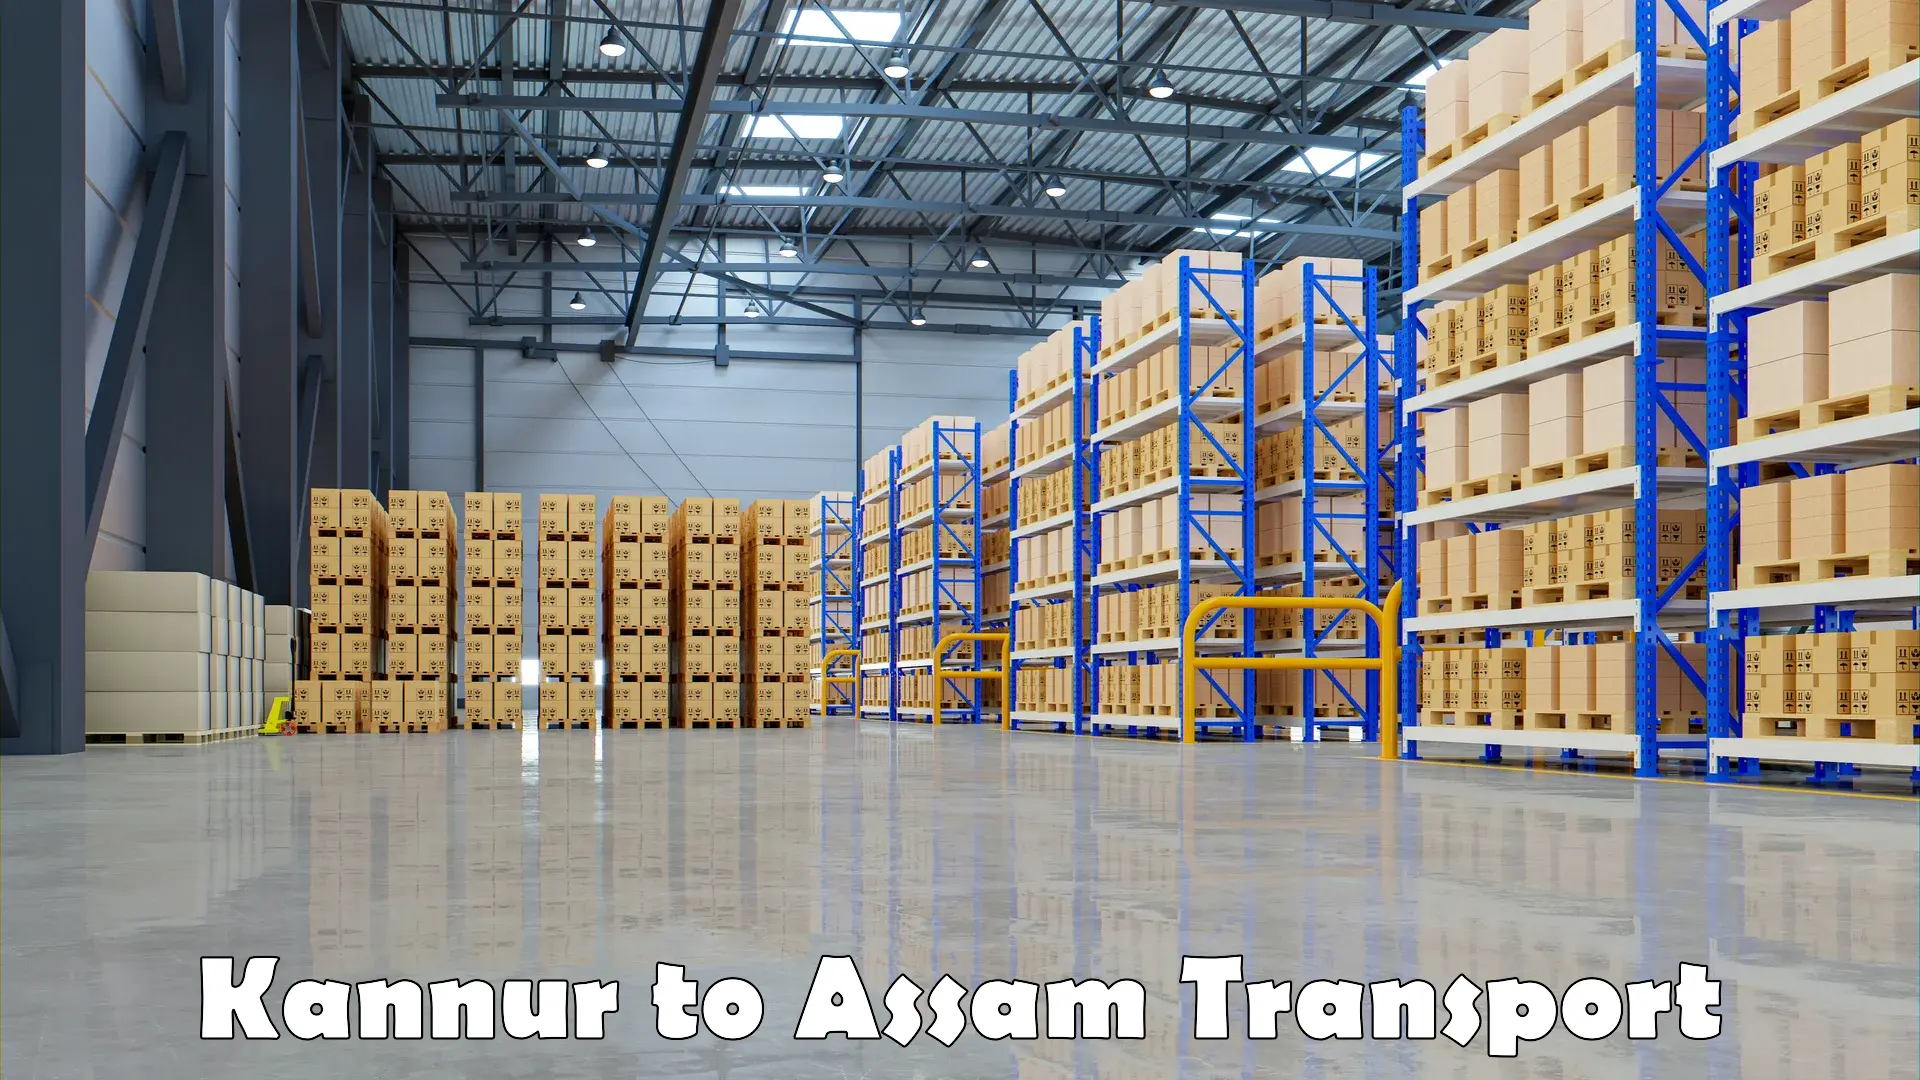 Nearest transport service Kannur to Assam